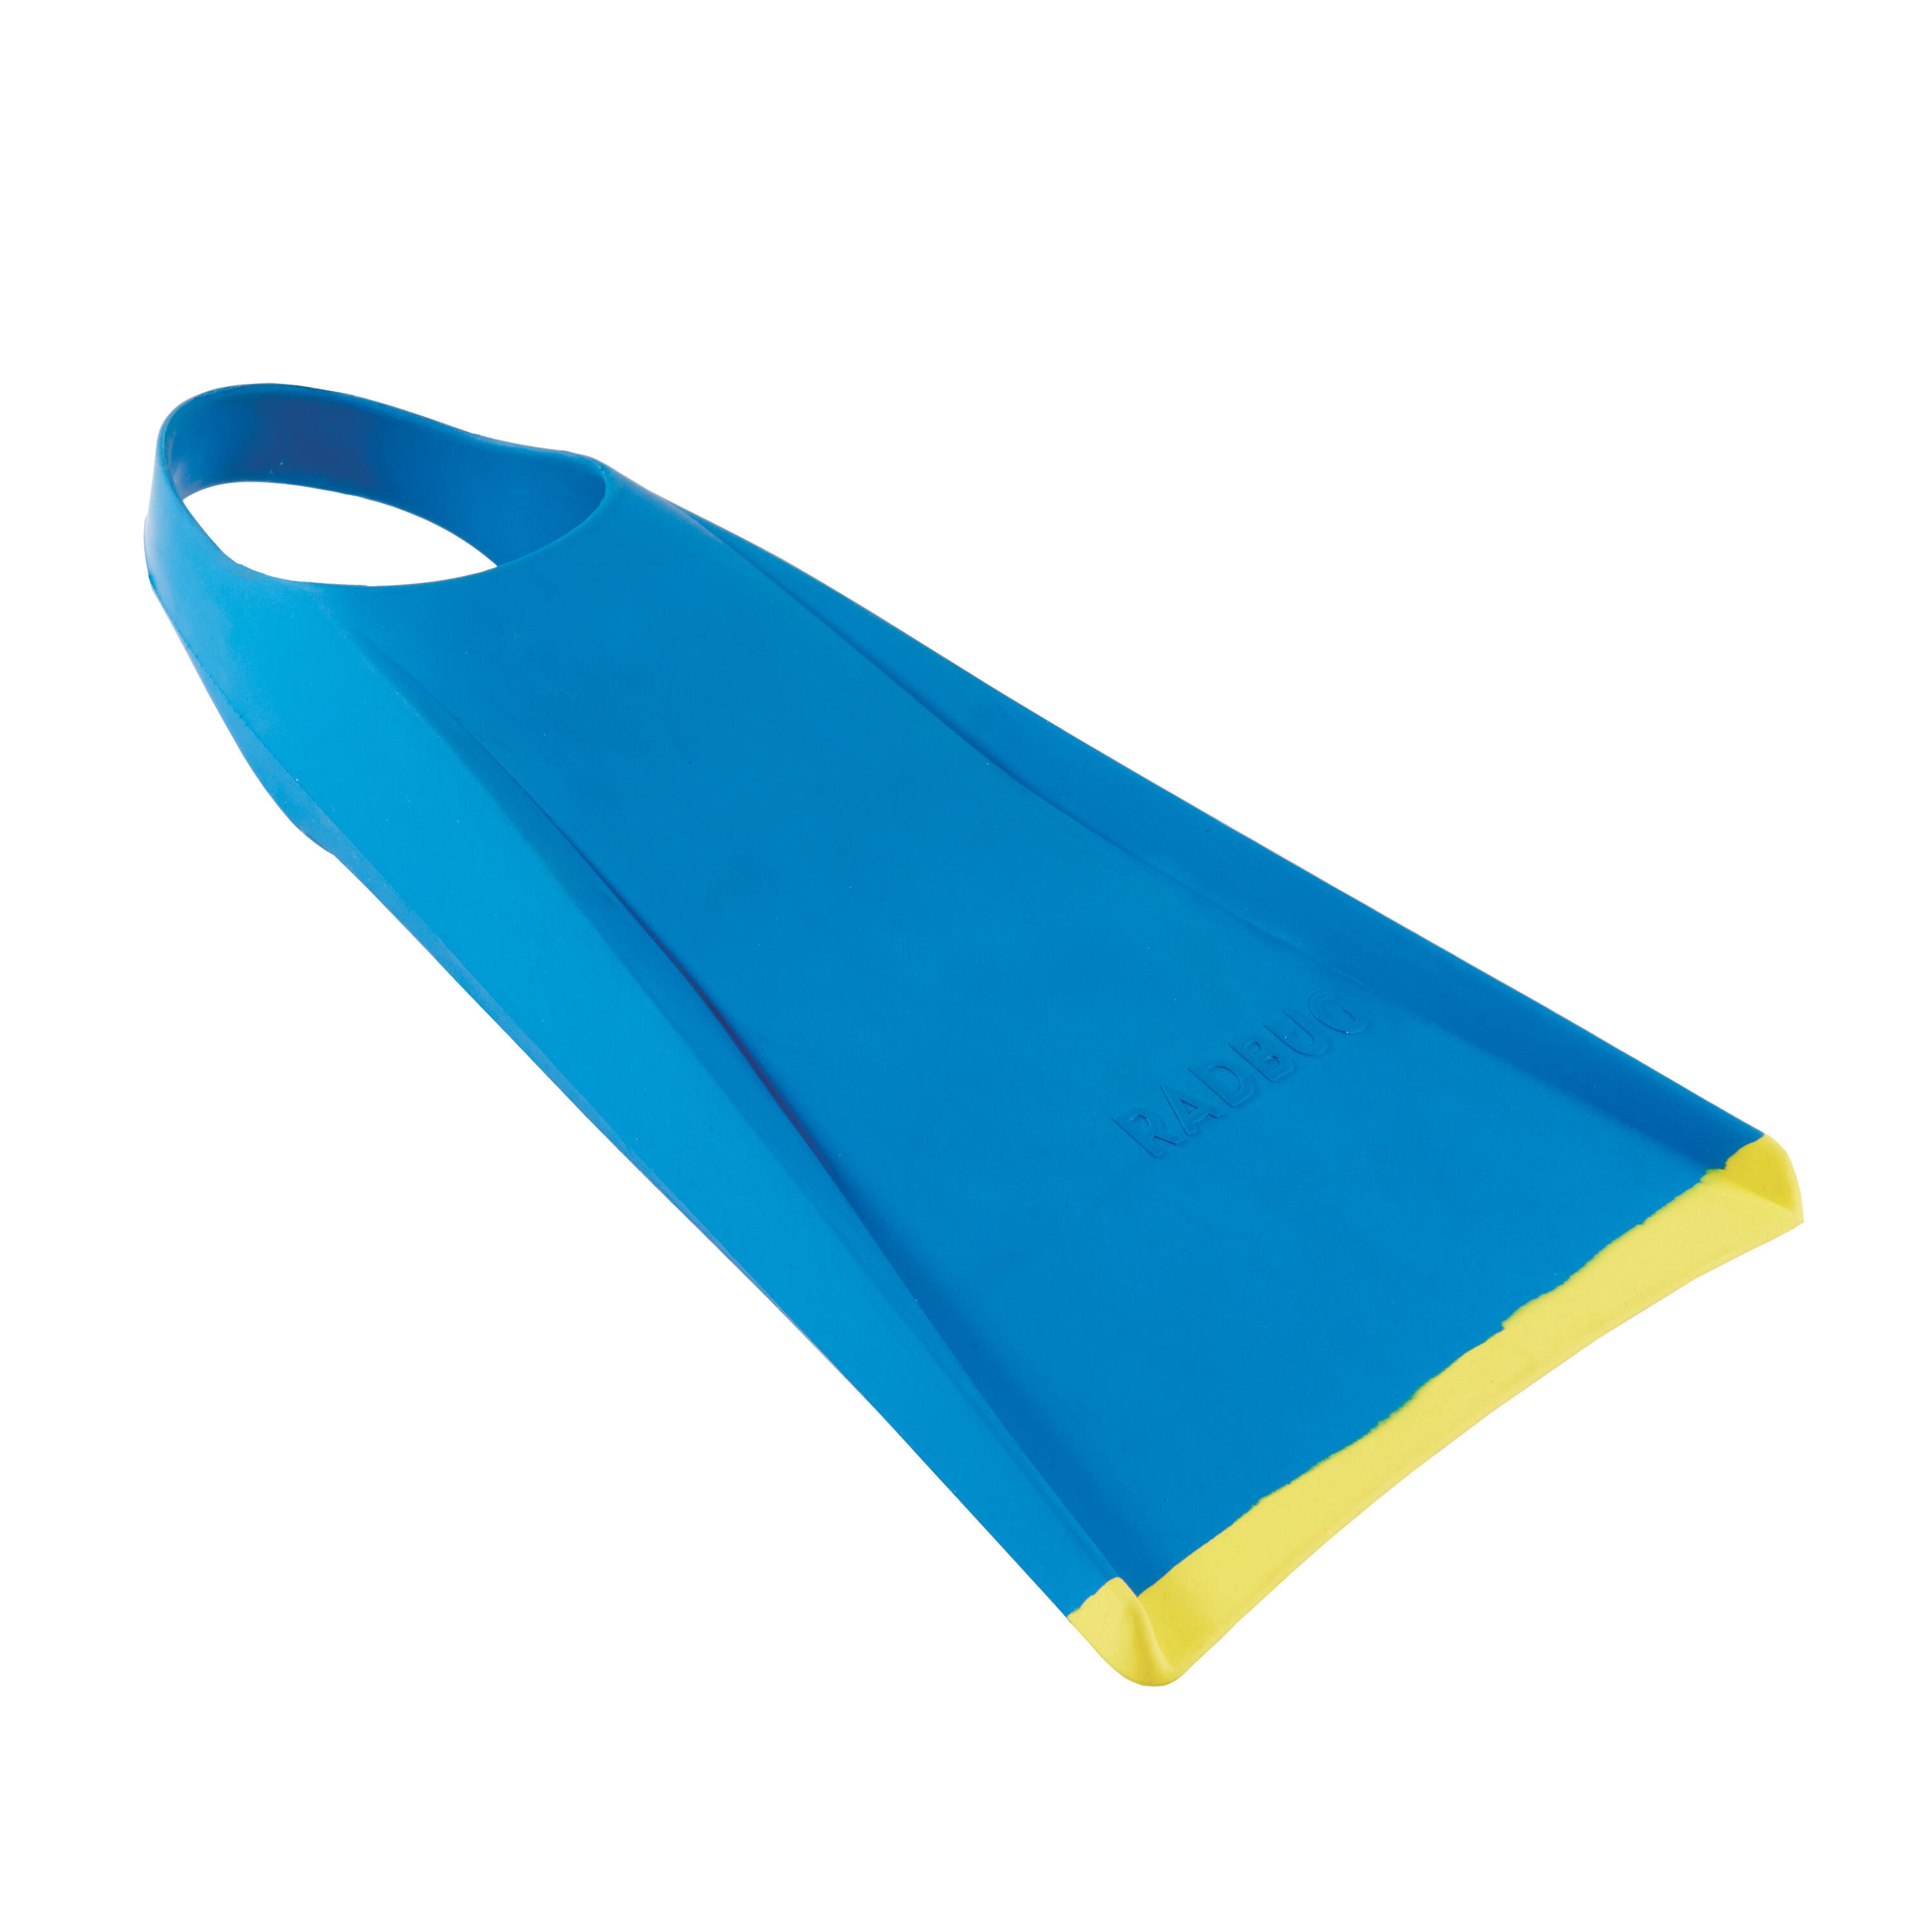 Ласты Bodyboard Ecodesign 100 синий/желтый RADBUG, бирюзово-синий желтые цветные плавники для серфинга одинарные плавники двойные вкладыши трехслойный набор плавников из стекловолокна трехслойные плав